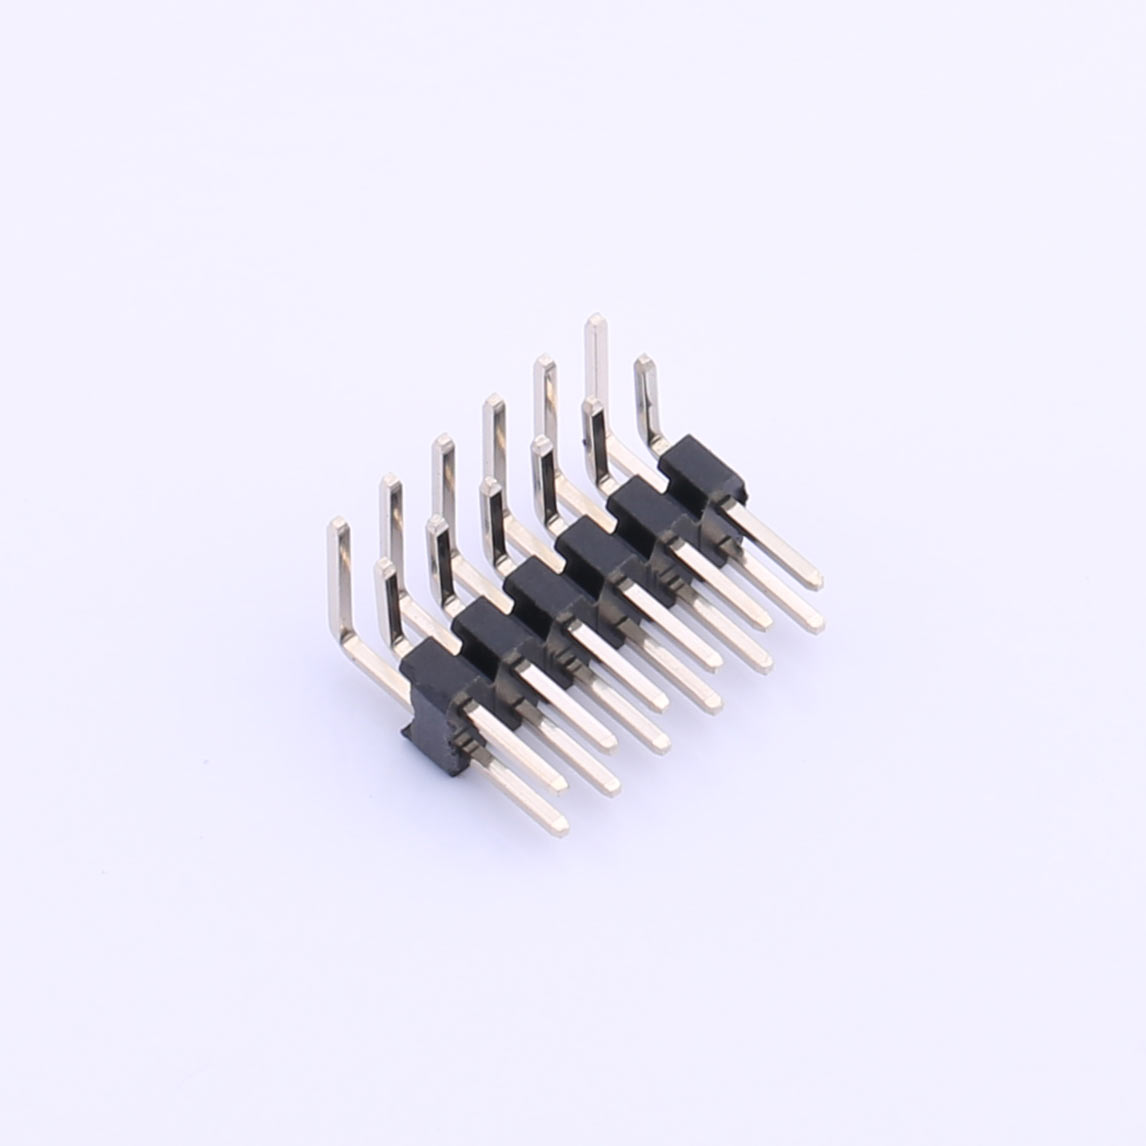 Kinghelm 2mm Pin Header Connector 2 Row*6 Pin 1.5A - KH-2PH90-2X6P-L10.5